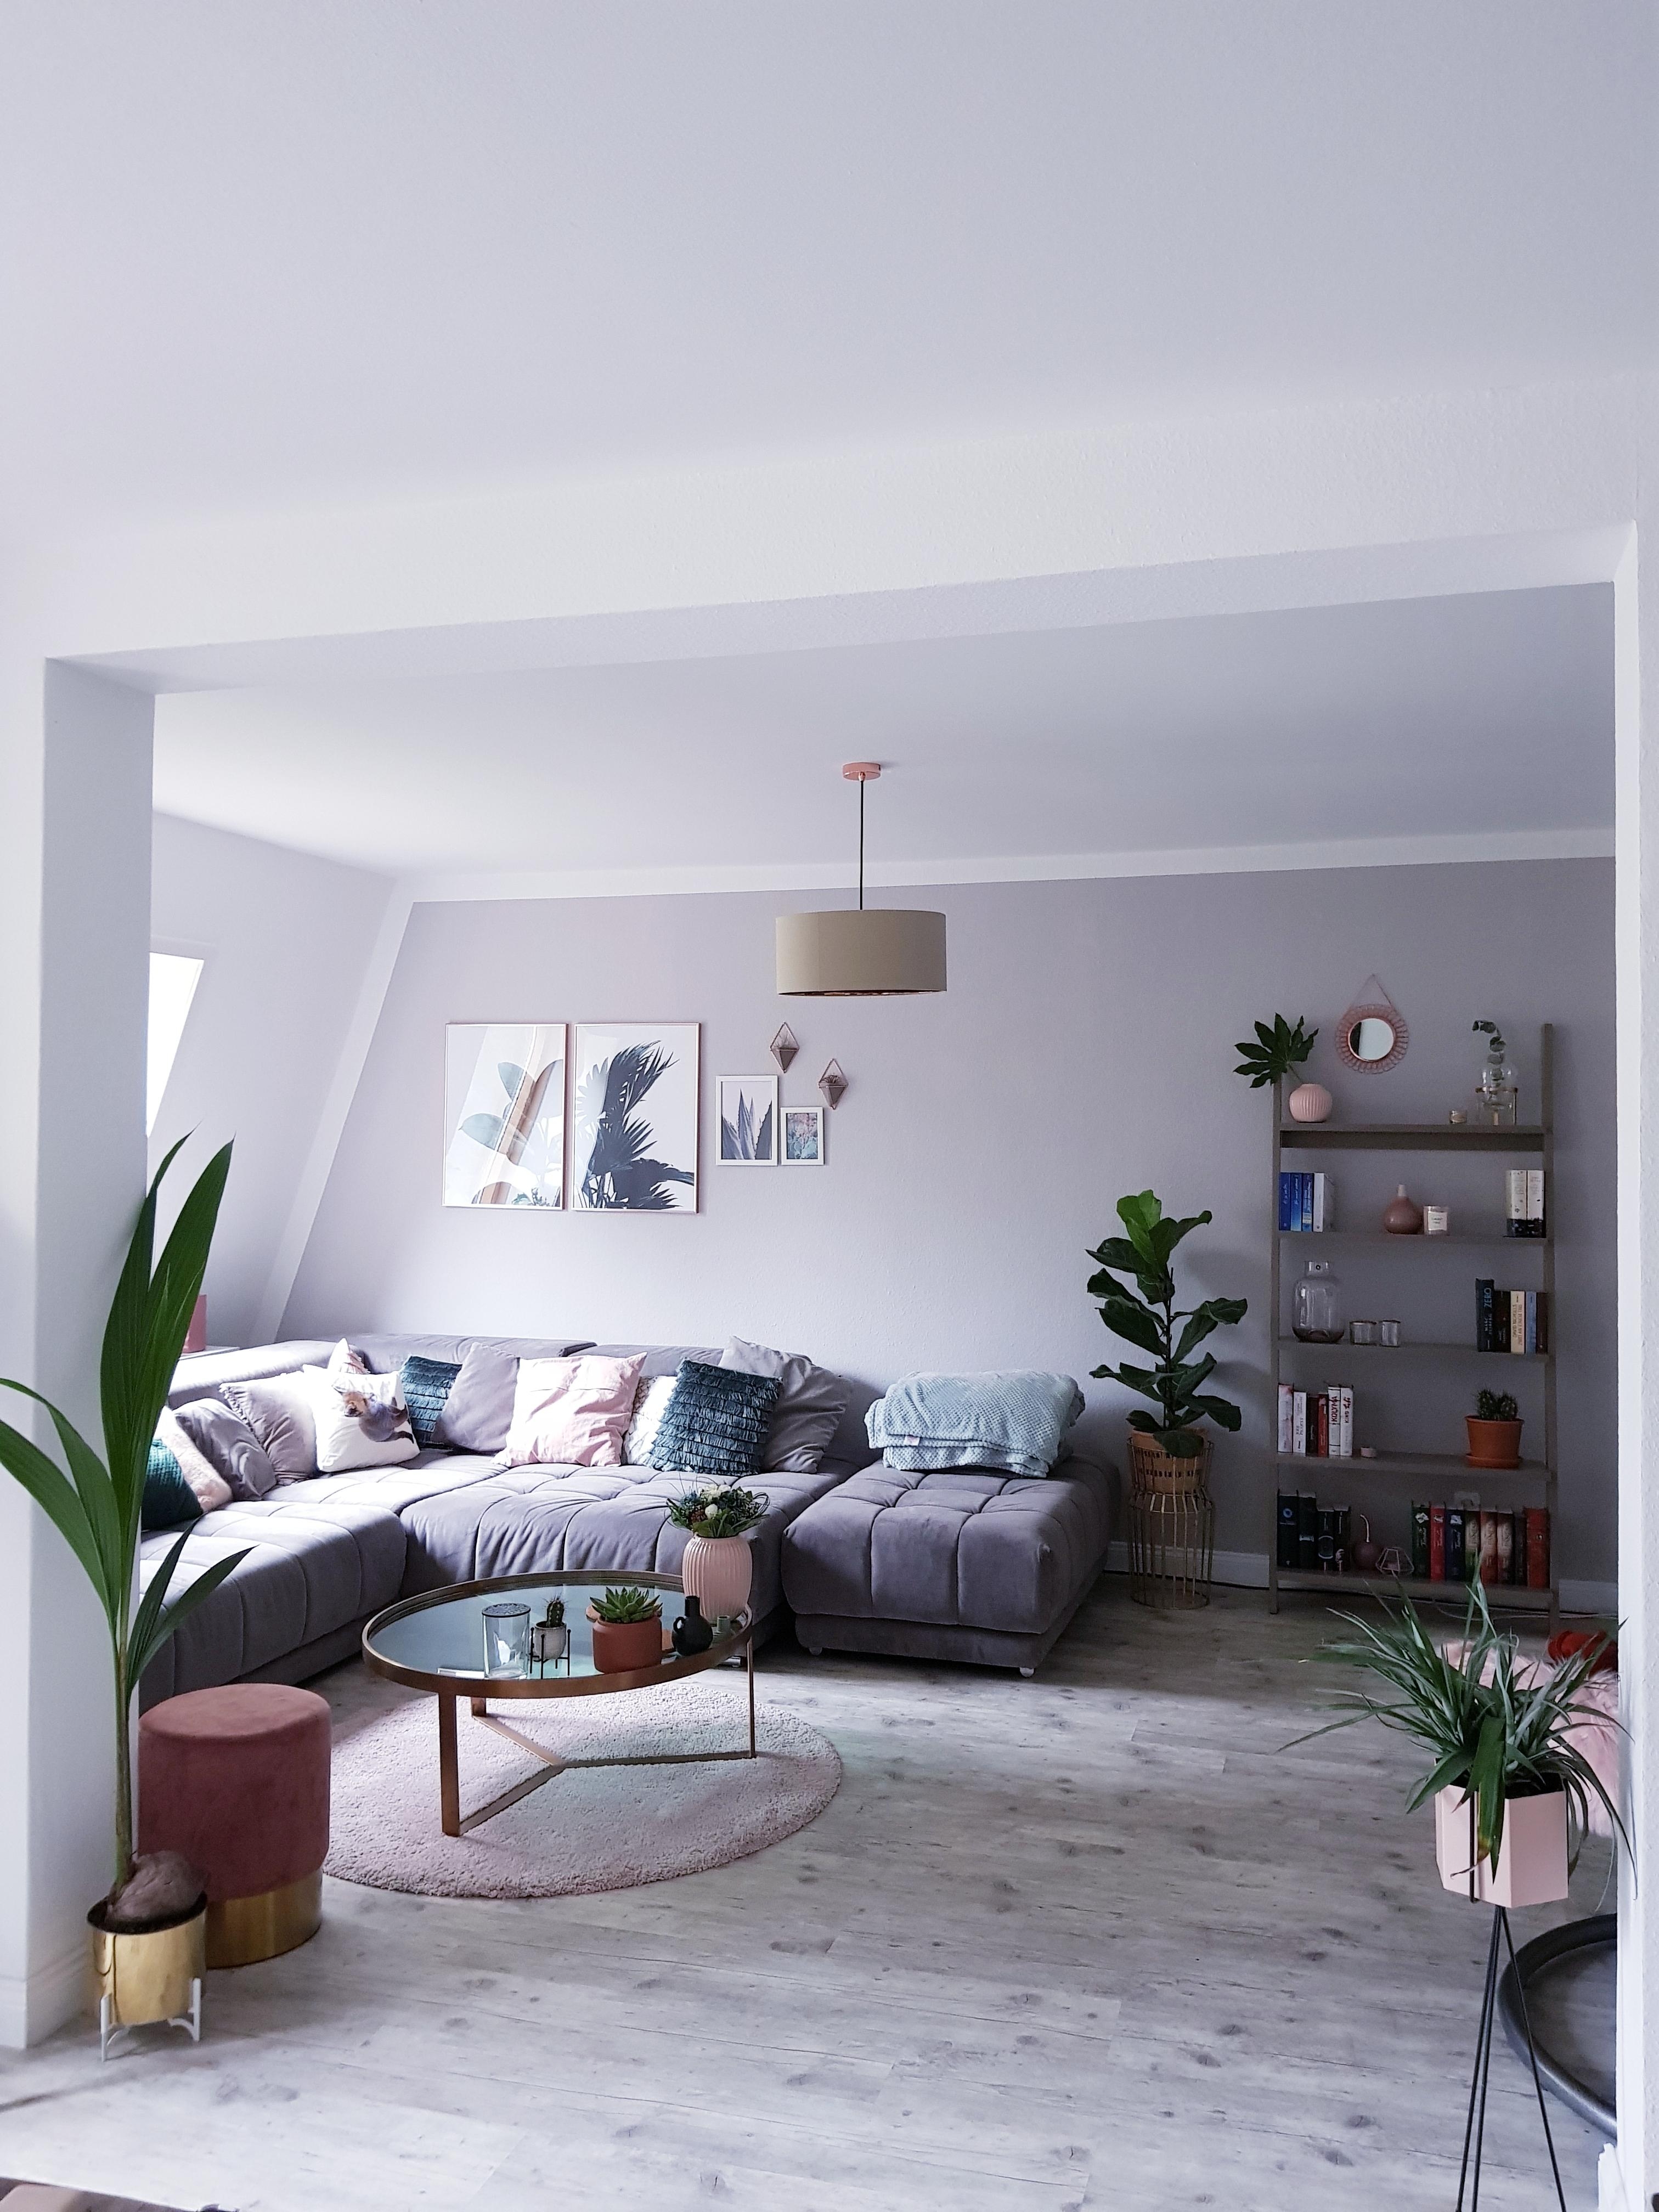 Unser Wohnzimmer hat ein bisschen Farbe bekommen 😍 #wohnzimmer #couchstyle #livingroom 